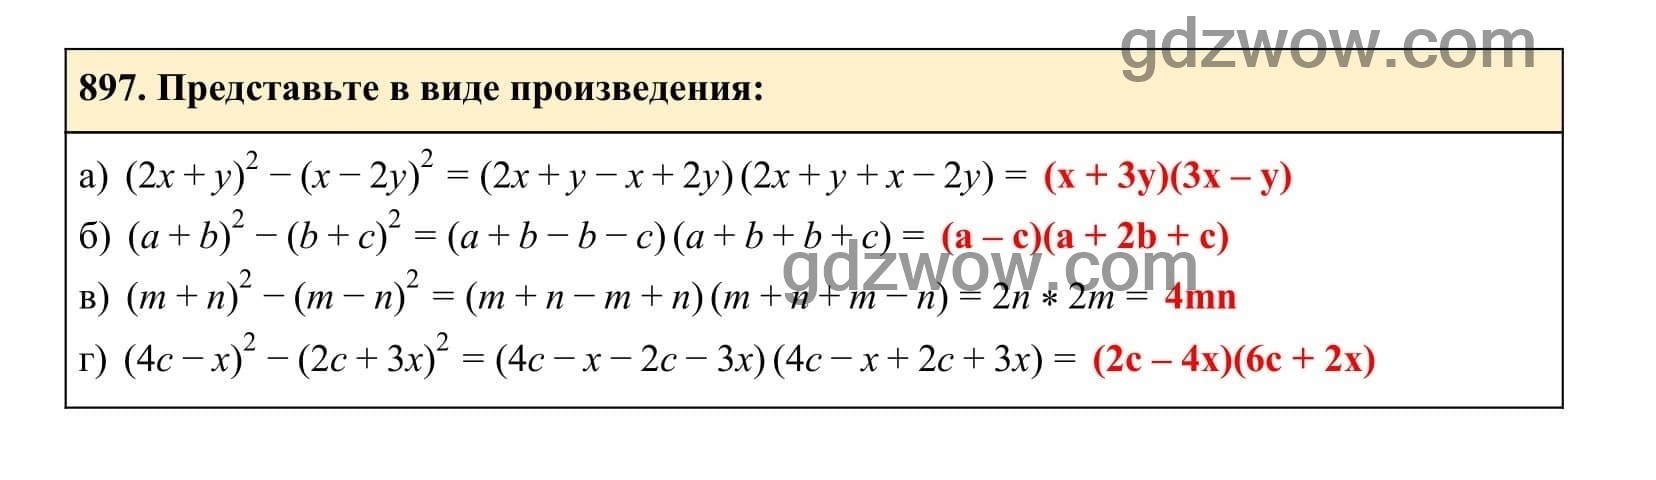 Упражнение 897 - ГДЗ по Алгебре 7 класс Учебник Макарычев (решебник) - GDZwow